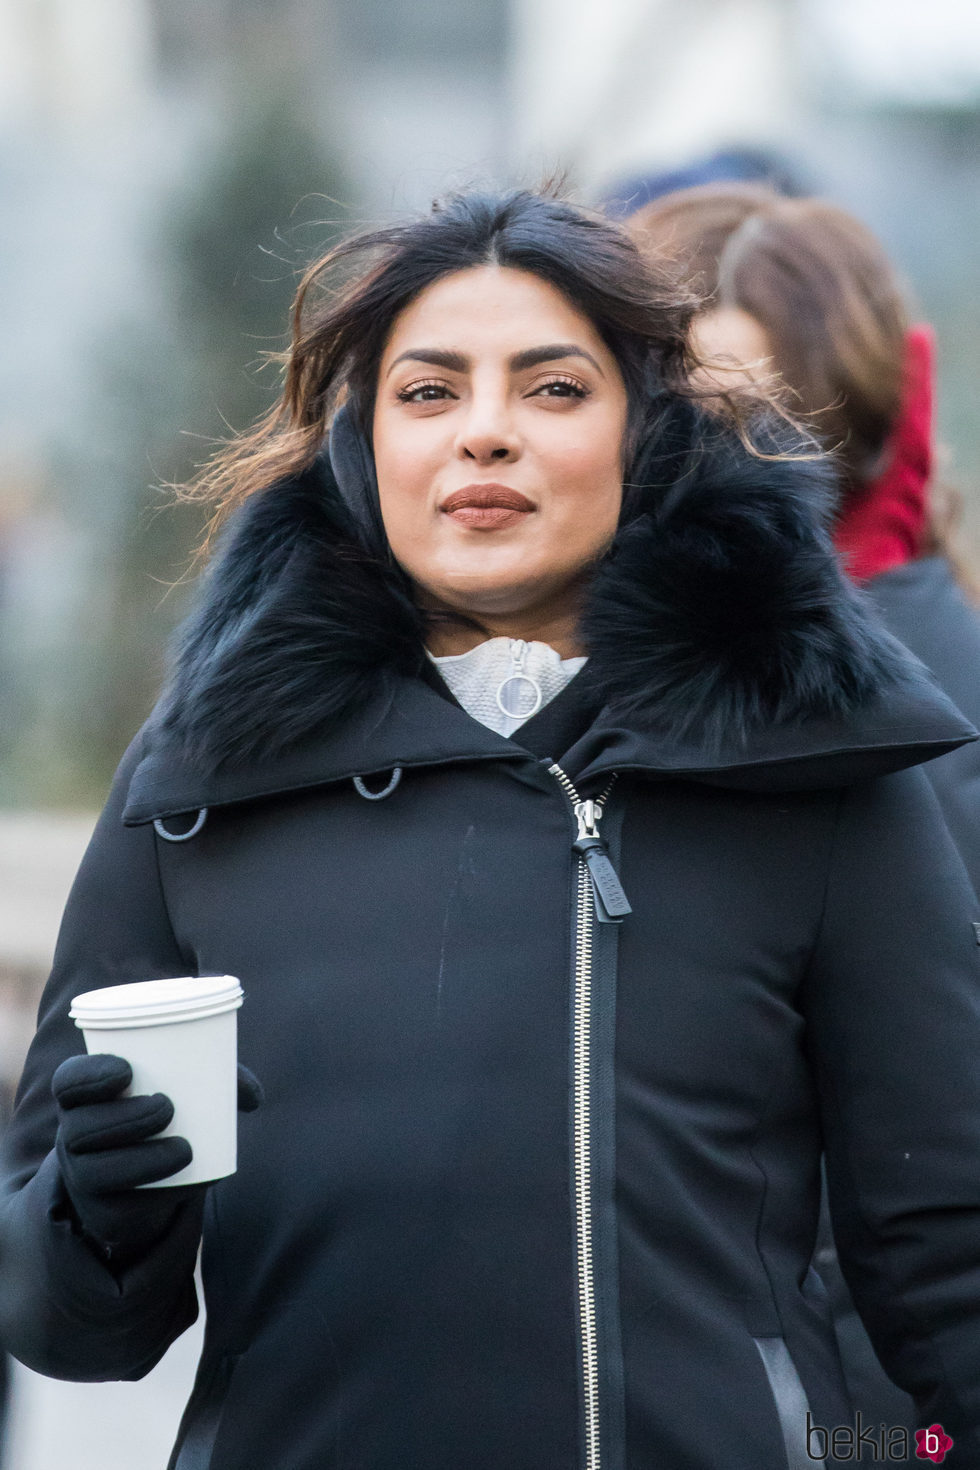 Priyanka Chopra ocultando el frío de Nueva York con maquillaje en el rodaje de 'Quantico'